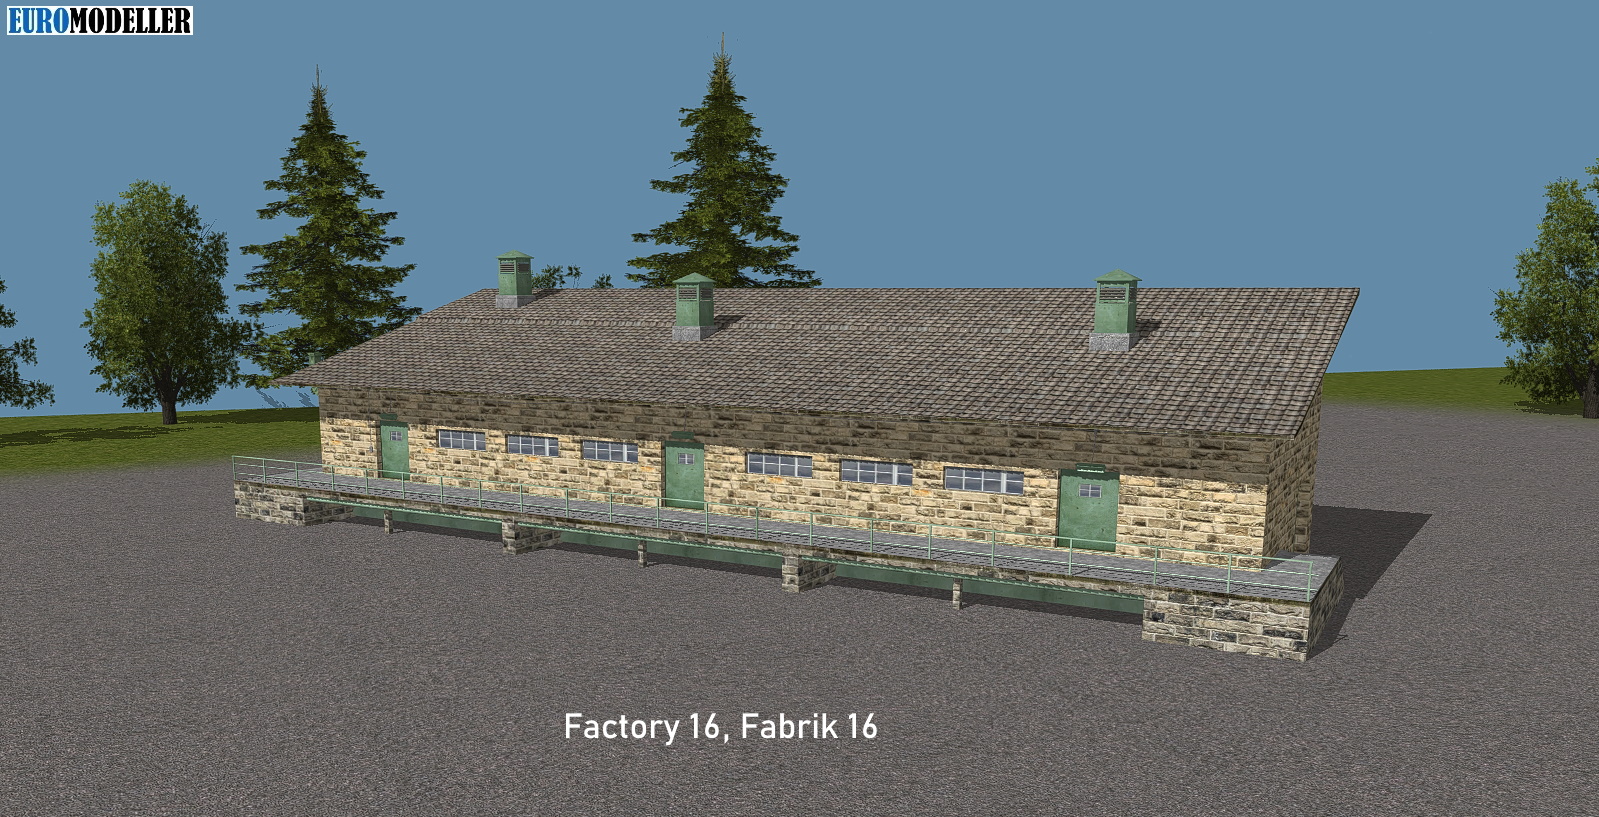 Factory 16, Fabrik 16